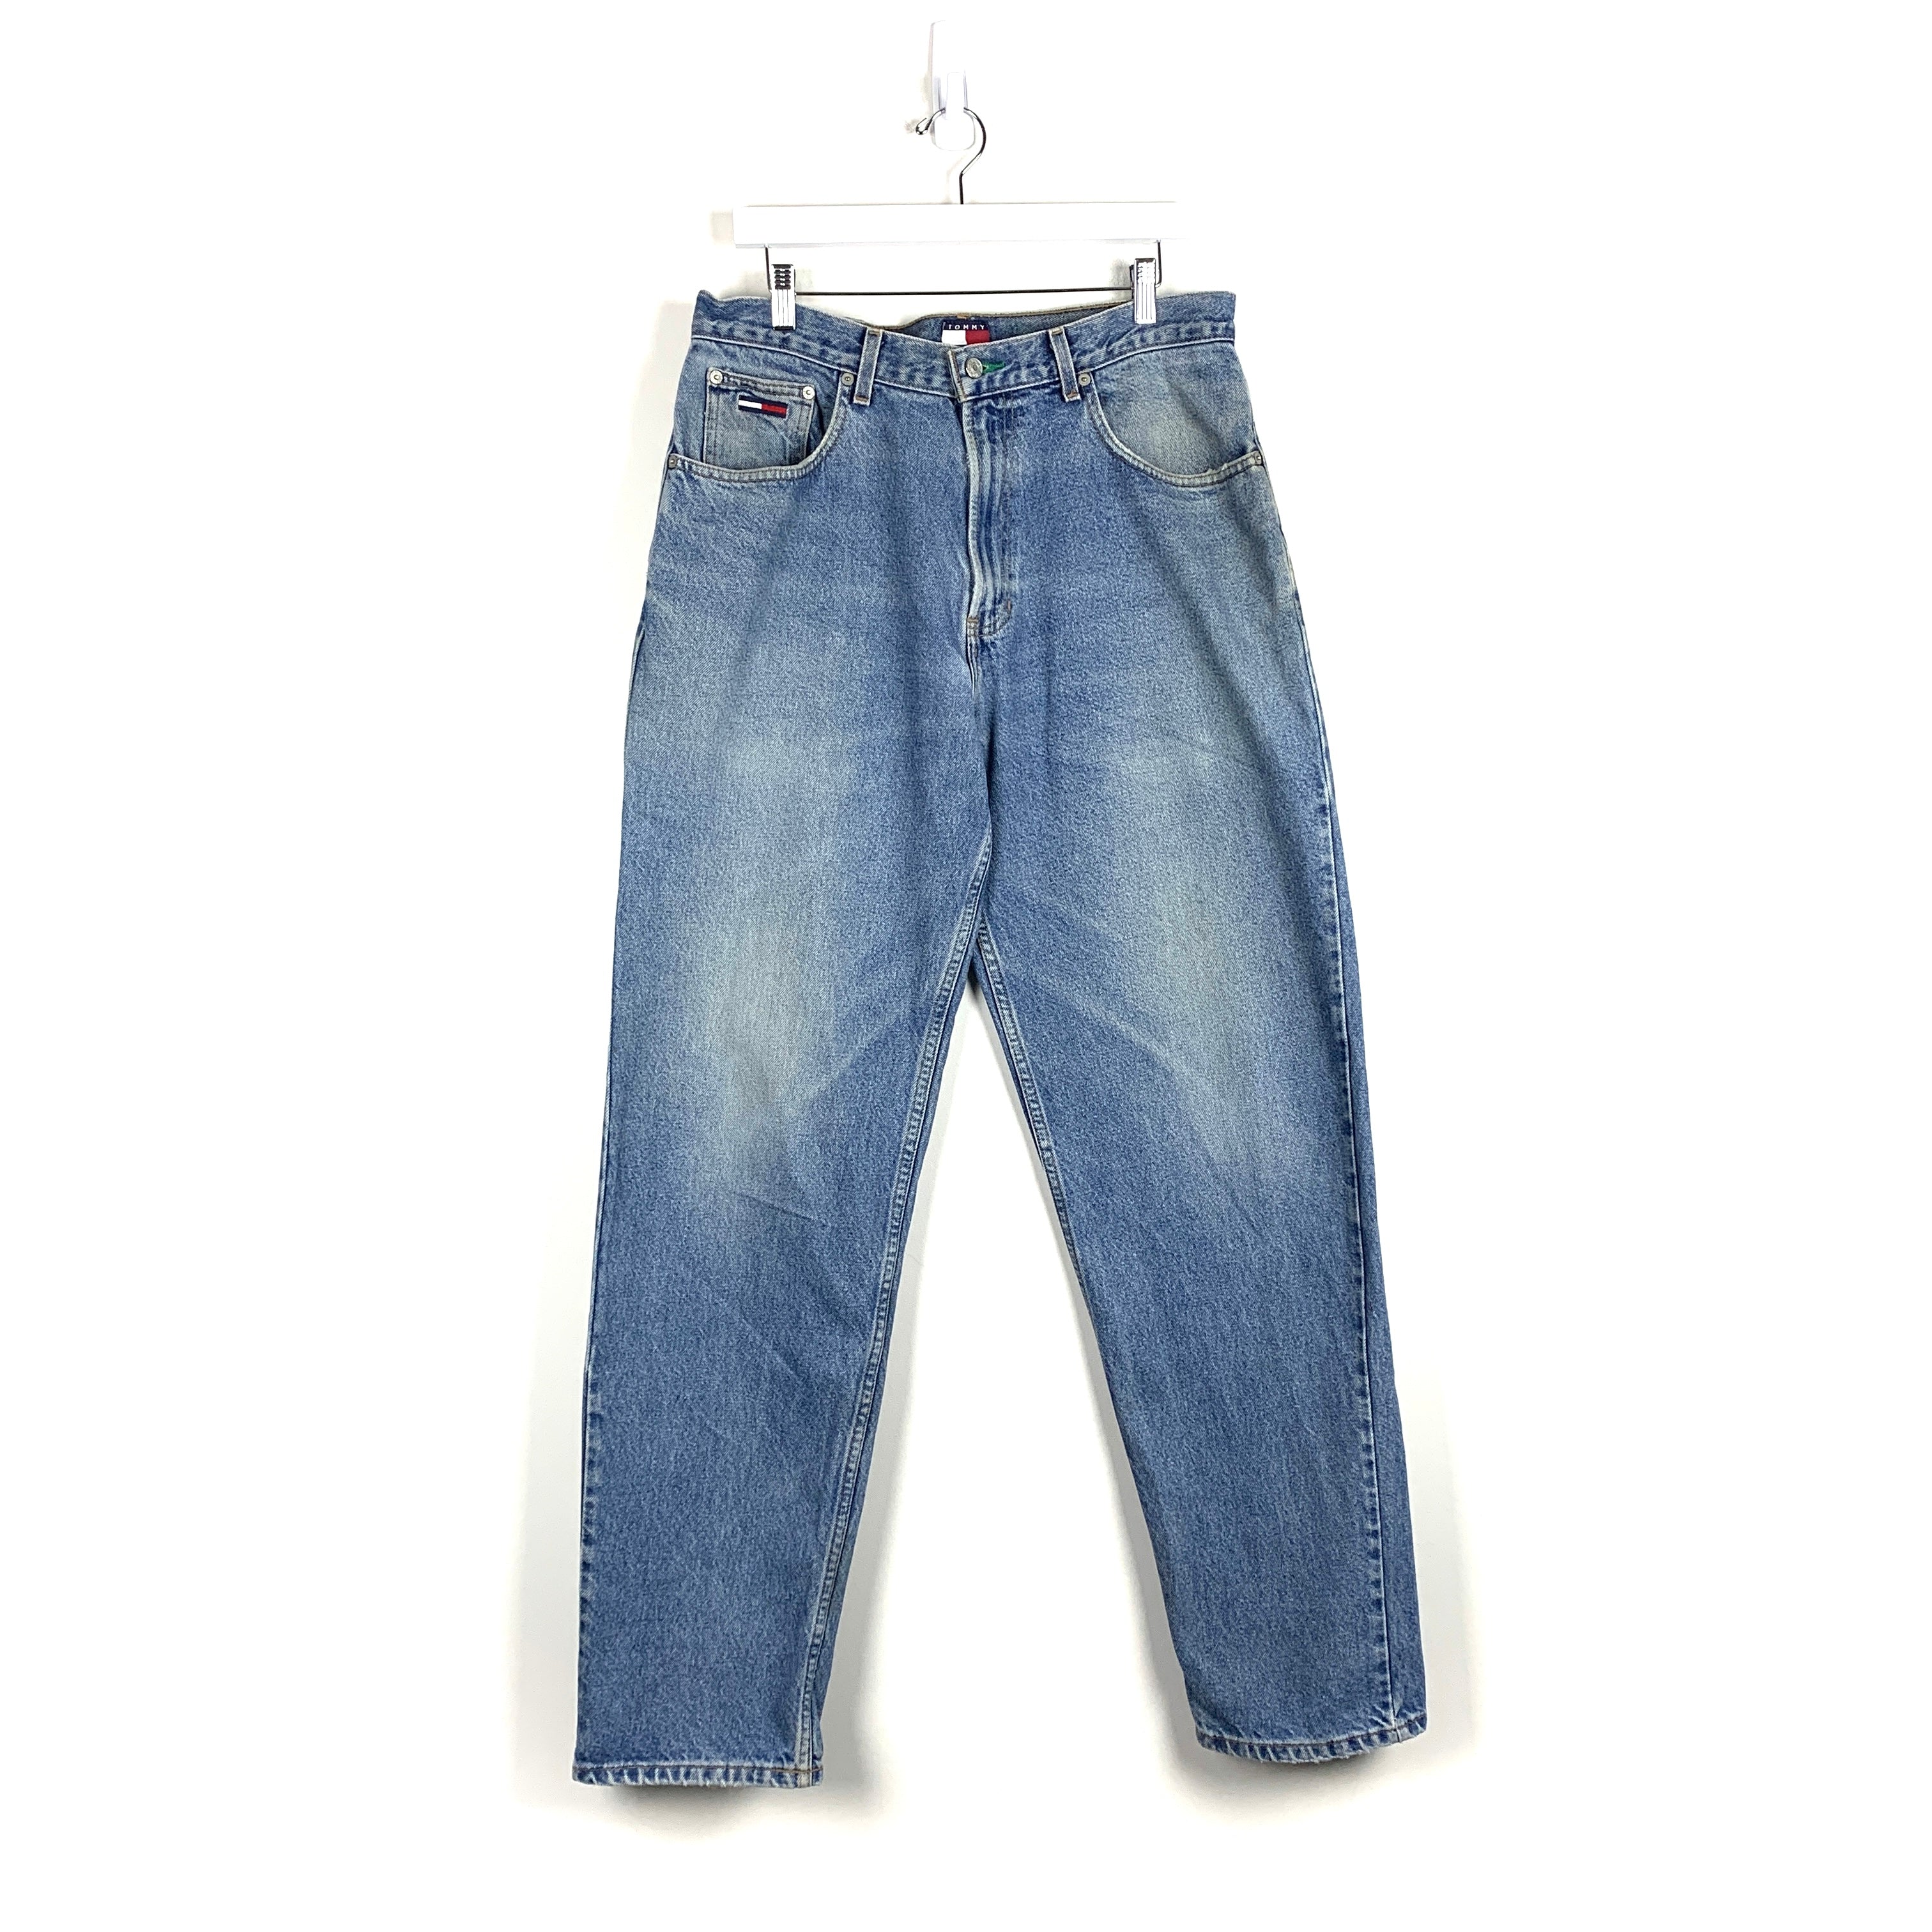 Vintage Tommy Hilfiger Jeans - Men's 34/34